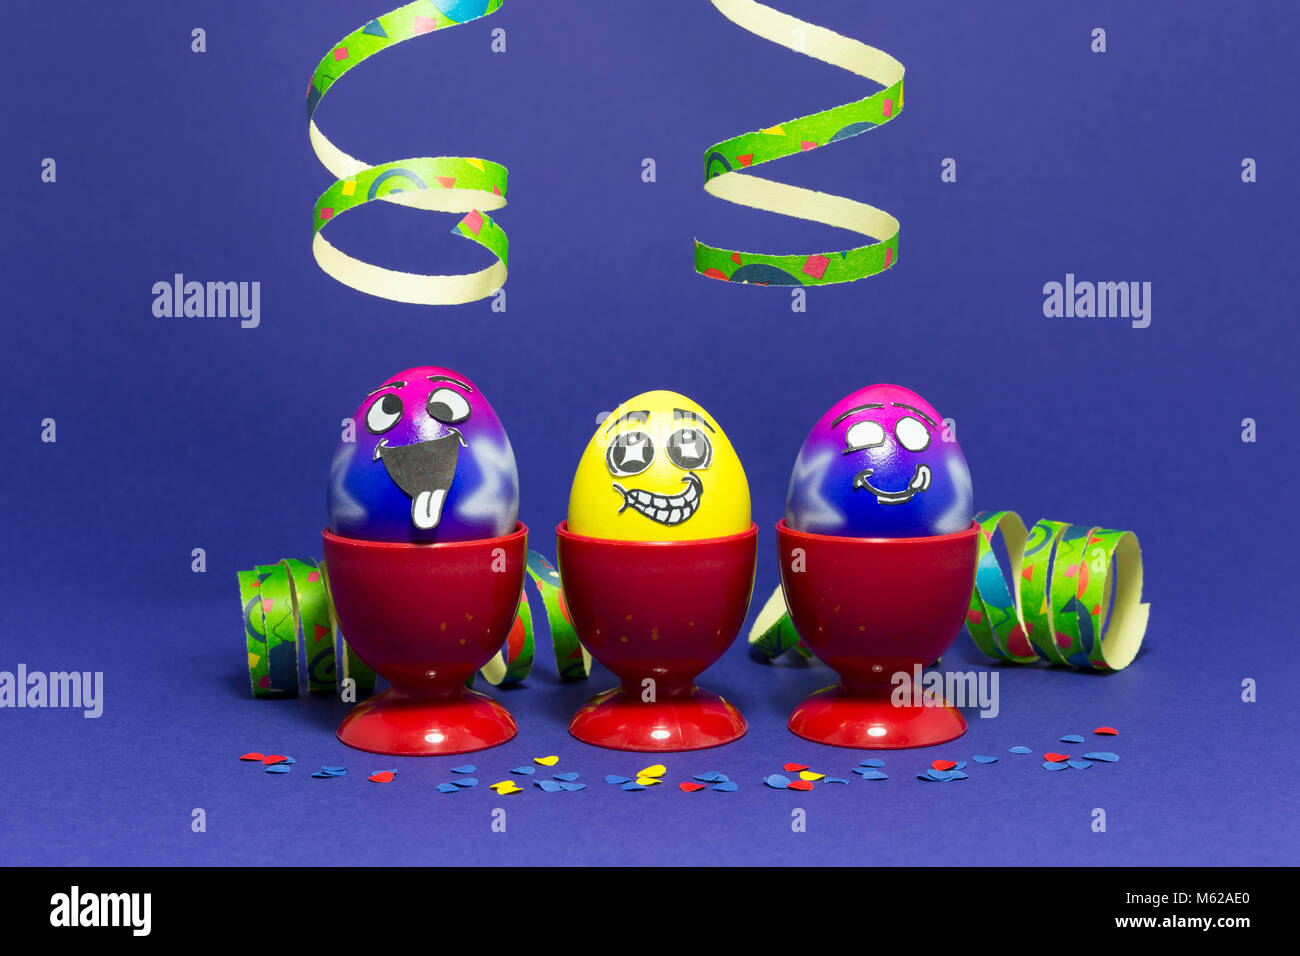 Groupe d'oeufs de Pâques peints colorés avec drôle cartoon style visages dans des tasses et des oeufs en plastique rouge avec des banderoles de papier coloré confettis sur purple retour Banque D'Images